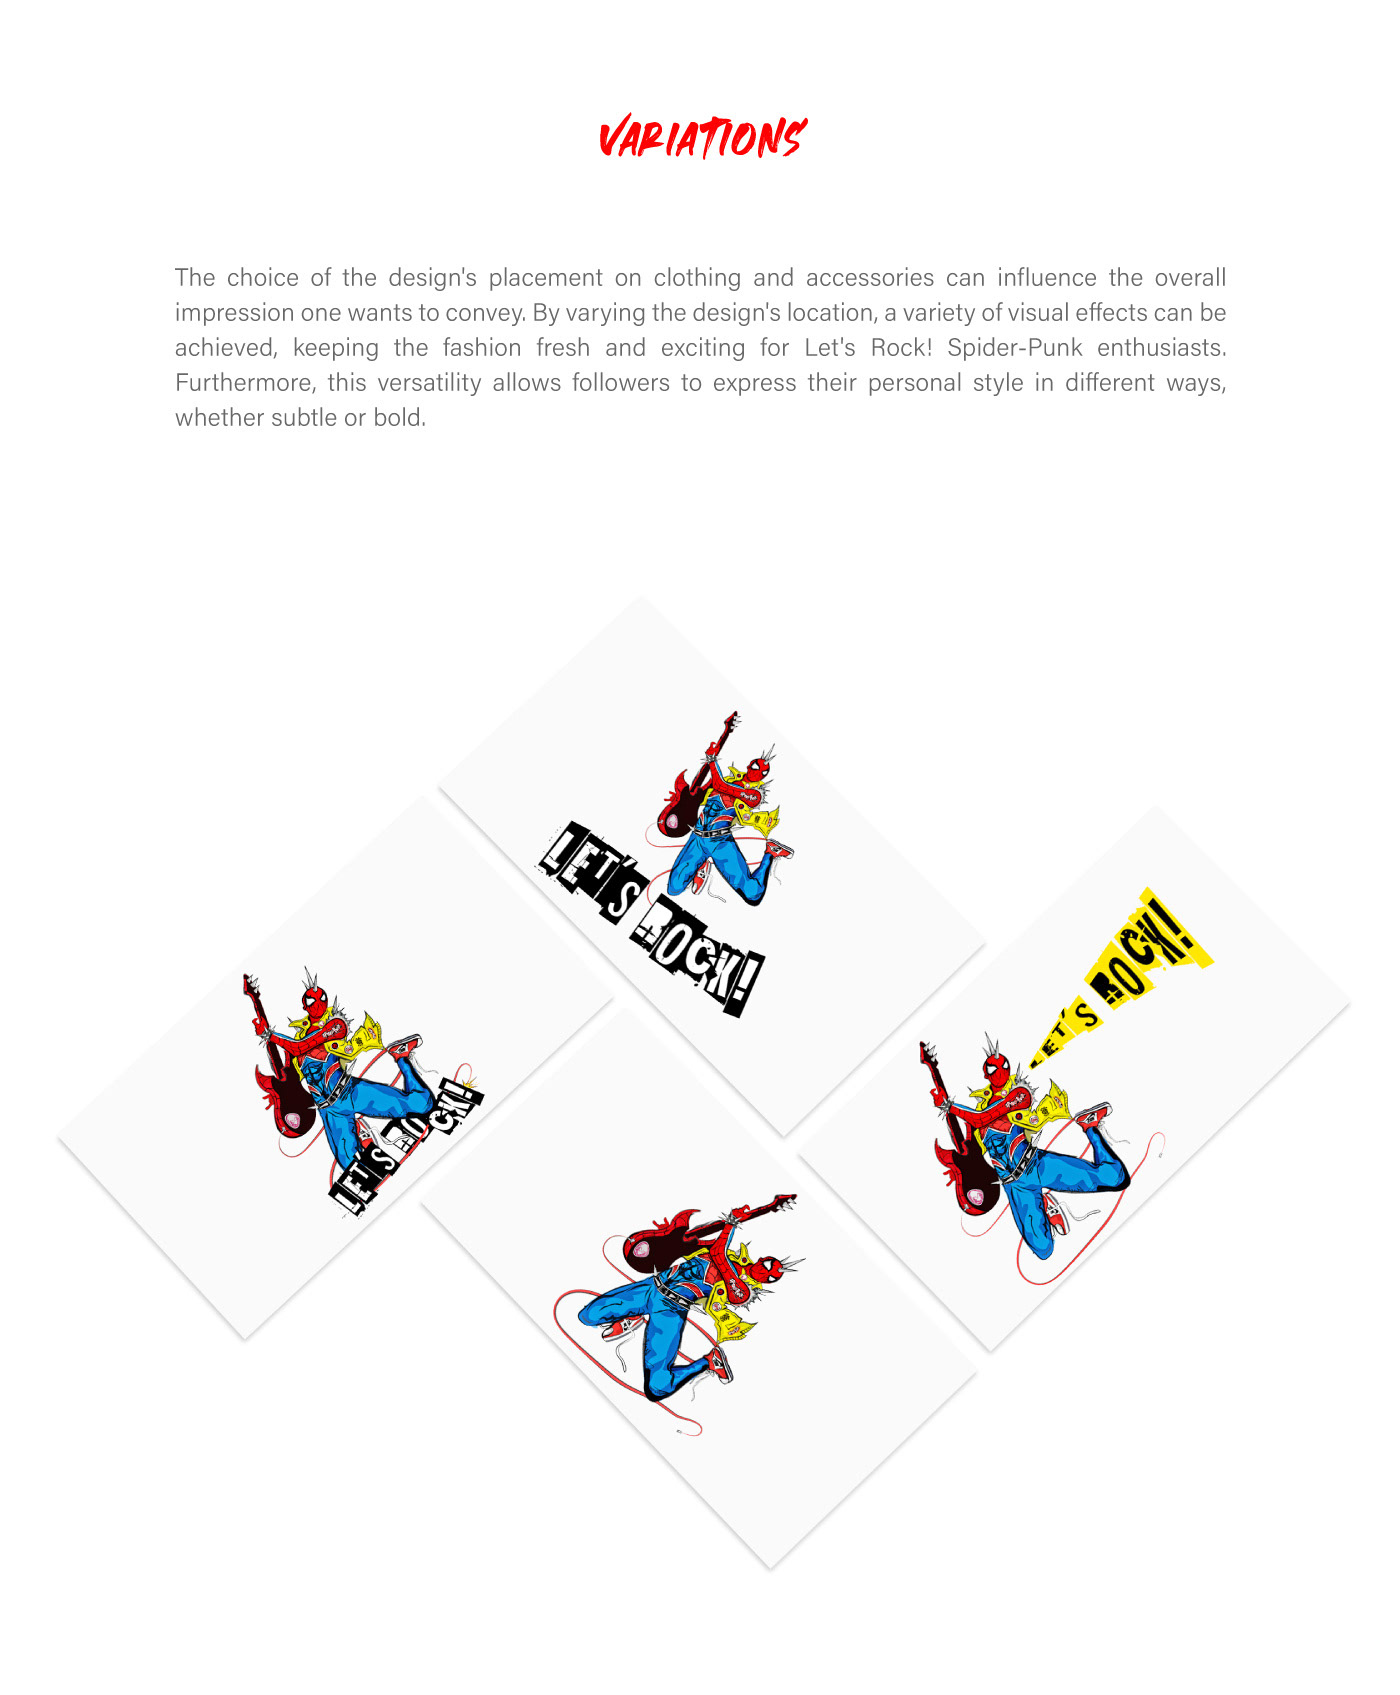 Character design  characterdesign ILLUSTRATION  Digital Art  artwork Graphic Designer spiderman Logo Design Branding Identity branding 